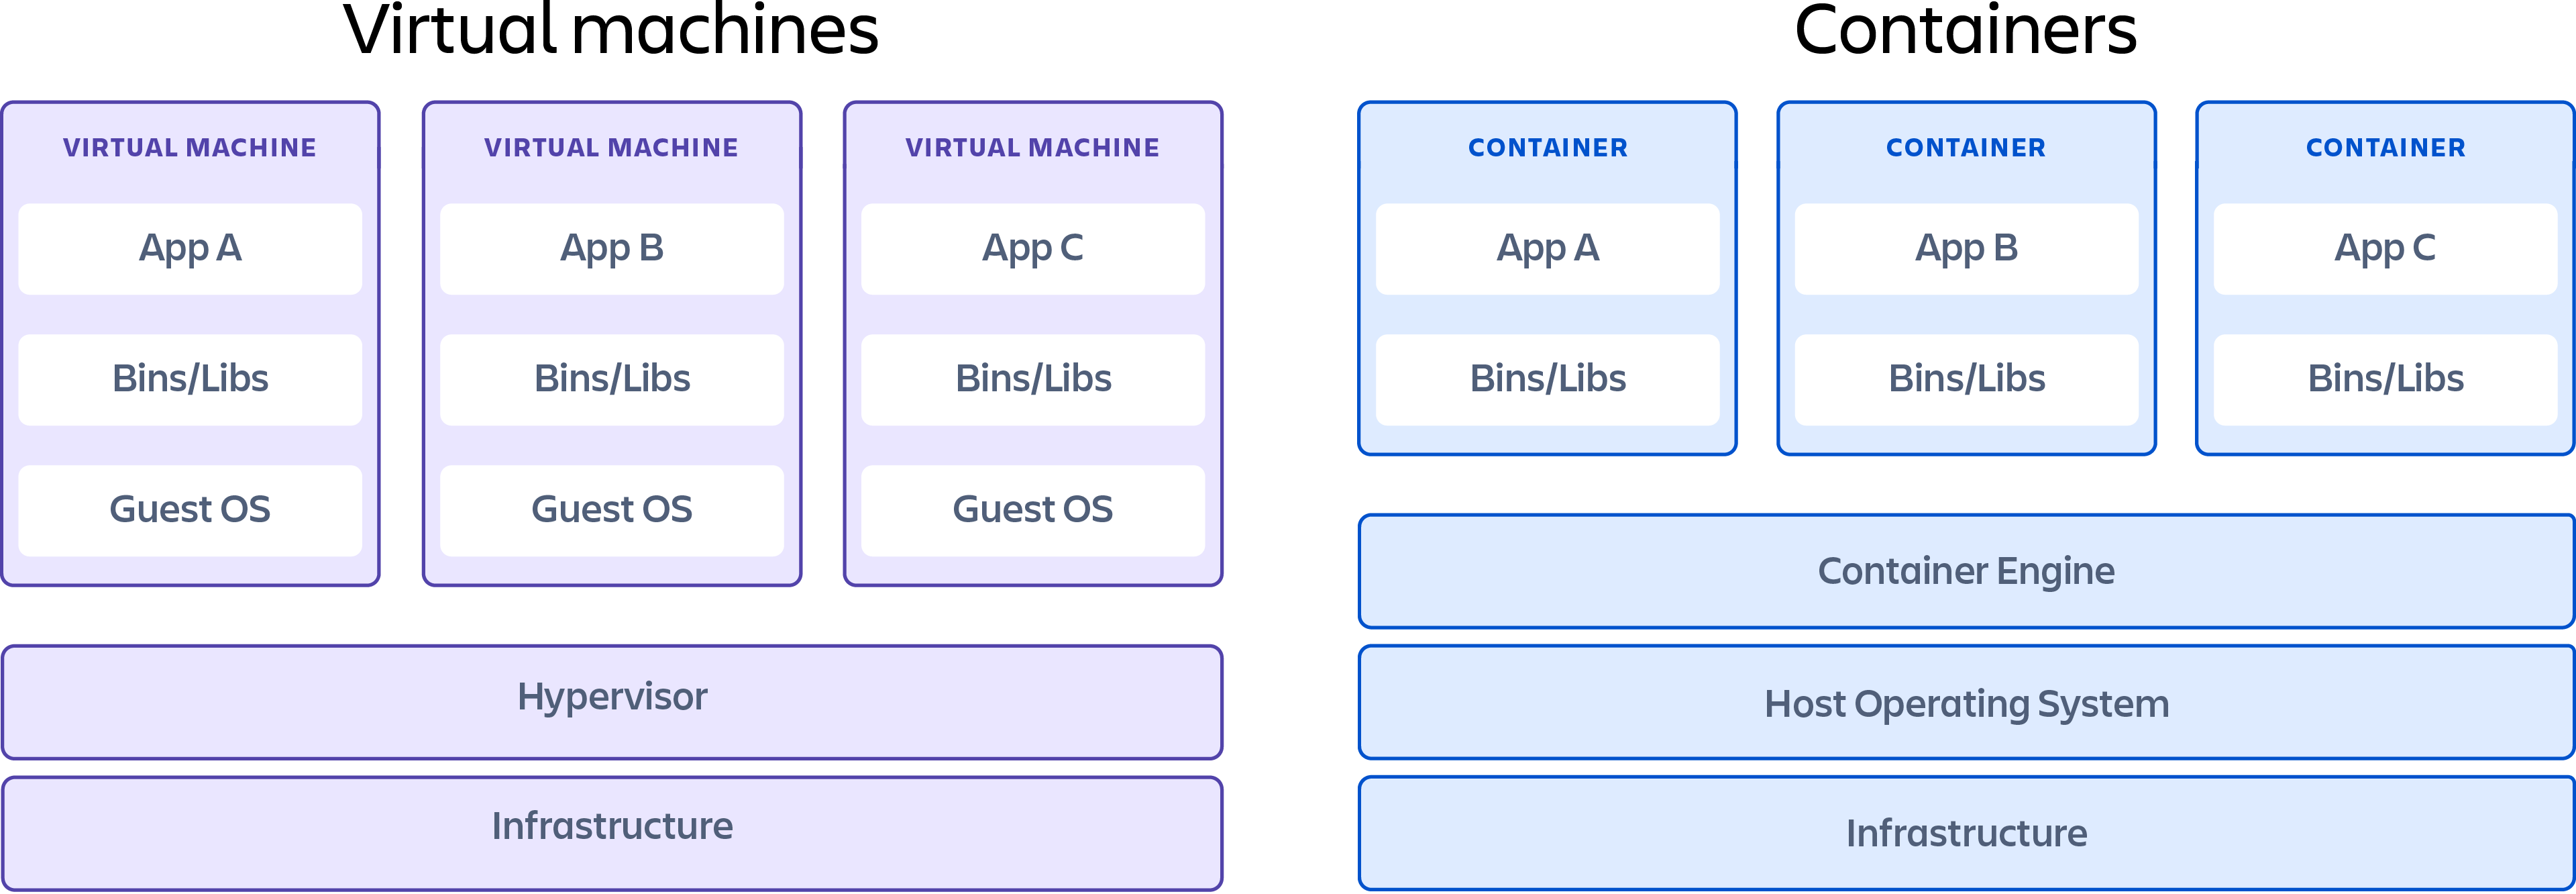 Ein Container, der die Unterschiede zwischen Virtual Machines und Containern zeigt